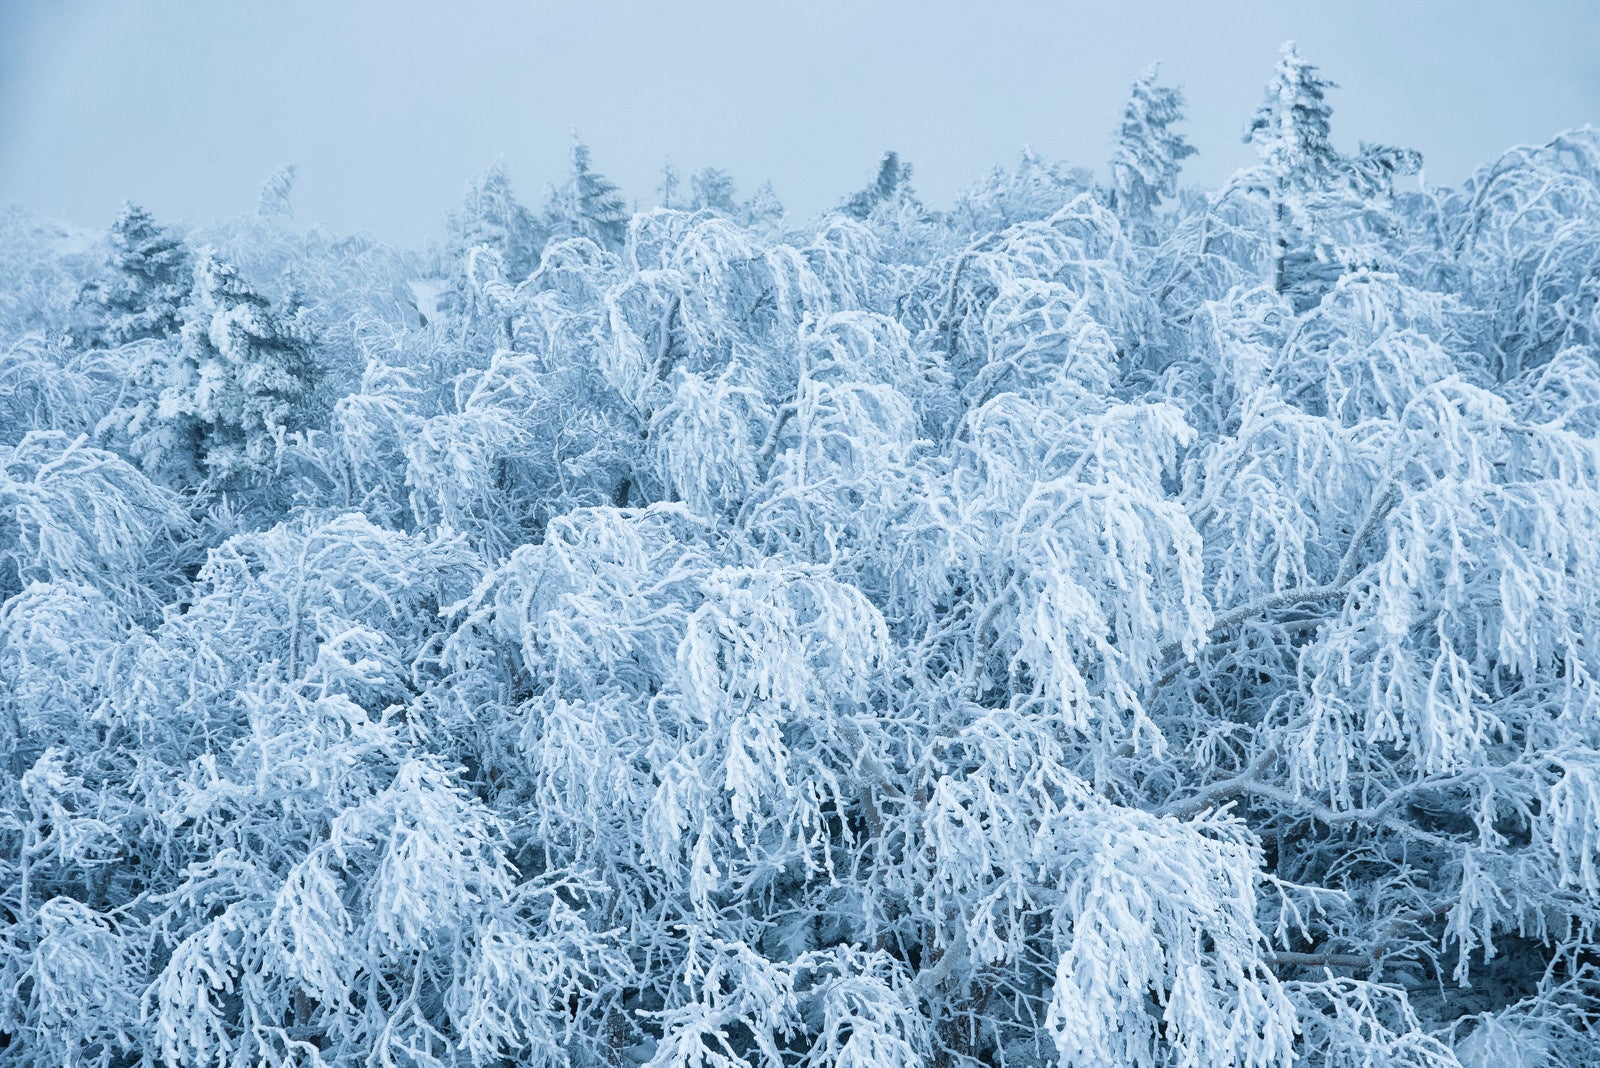 「不気味に白く凍った樹氷の枝」の写真